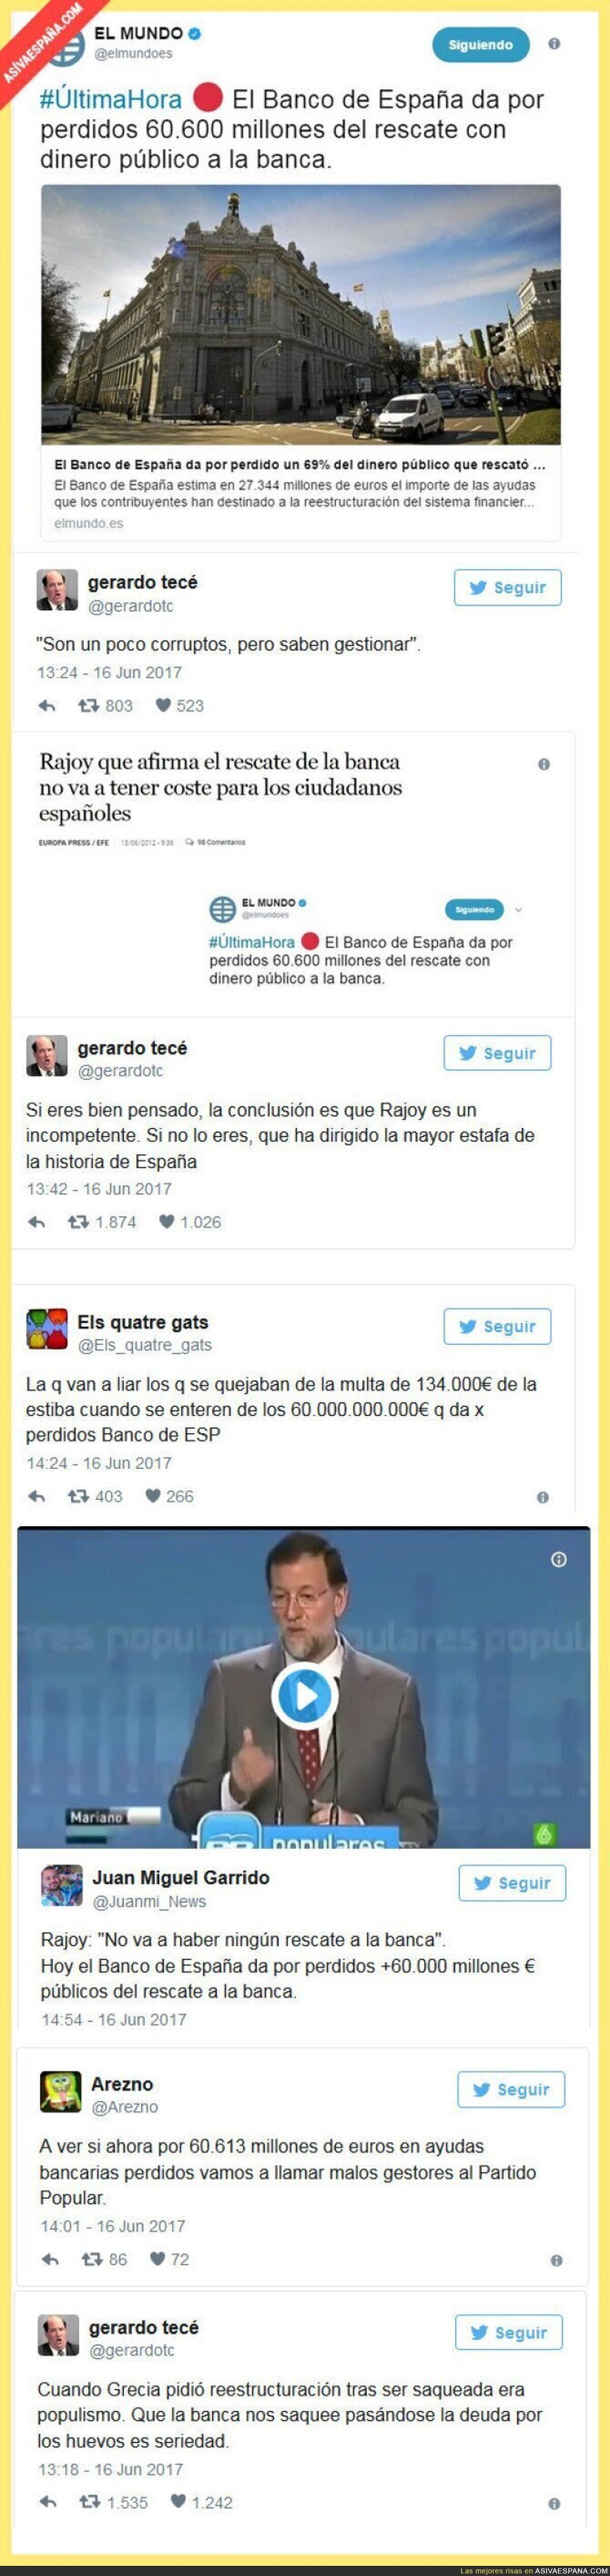 Popurrí de twits explicando lo del Banco de España que da por perdidos 60.000M €